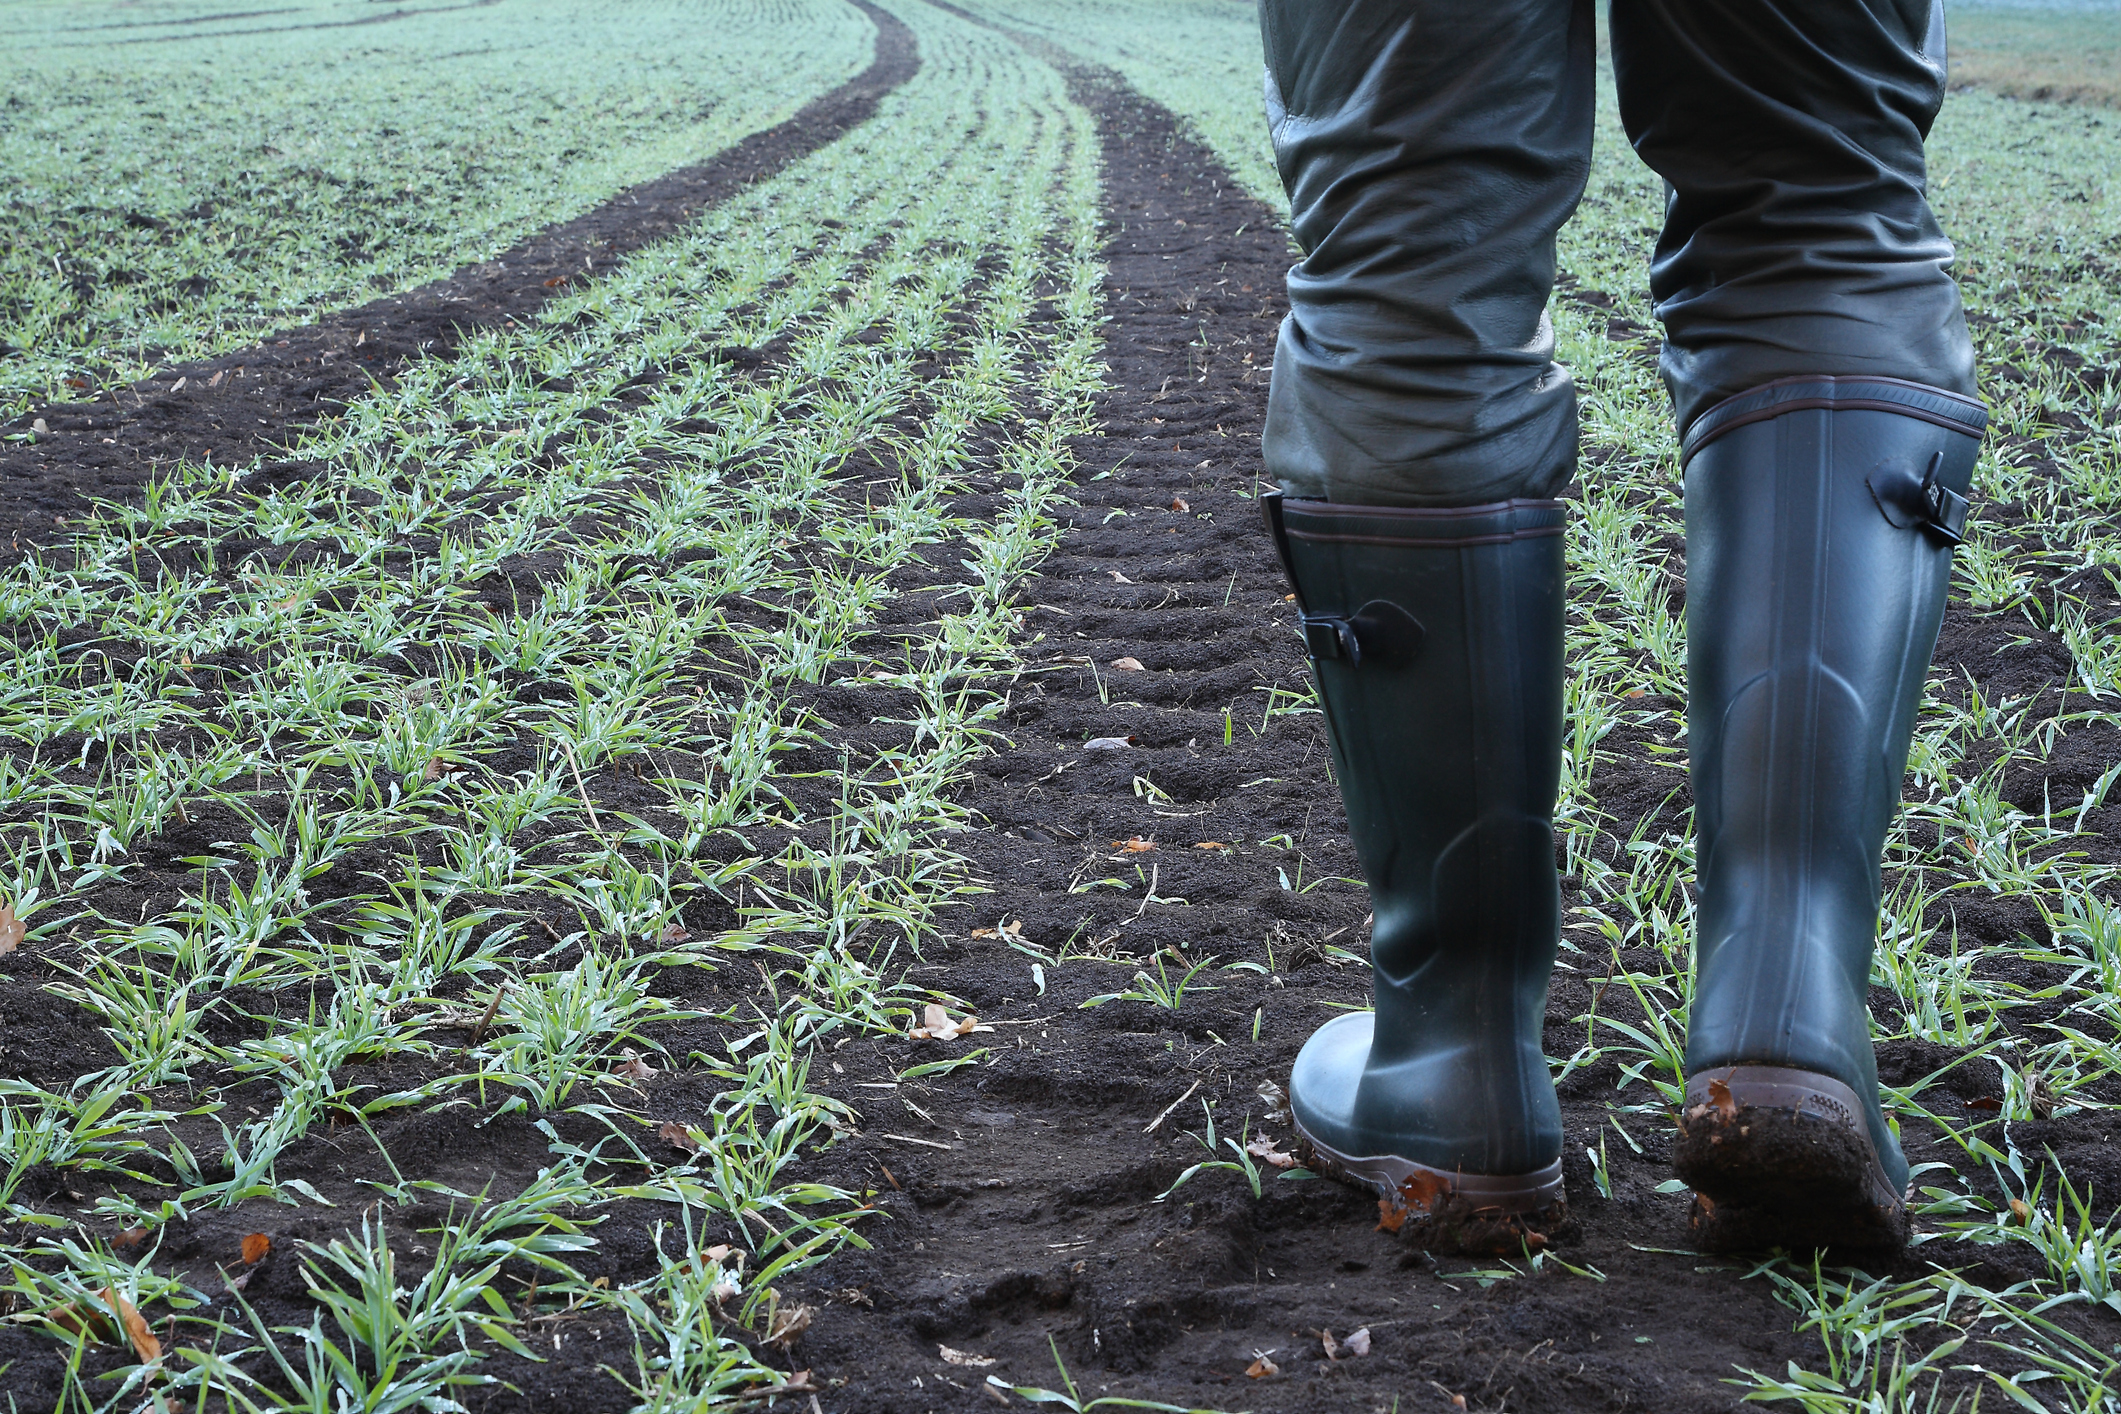 Farmer in wellies walking across a field of crops